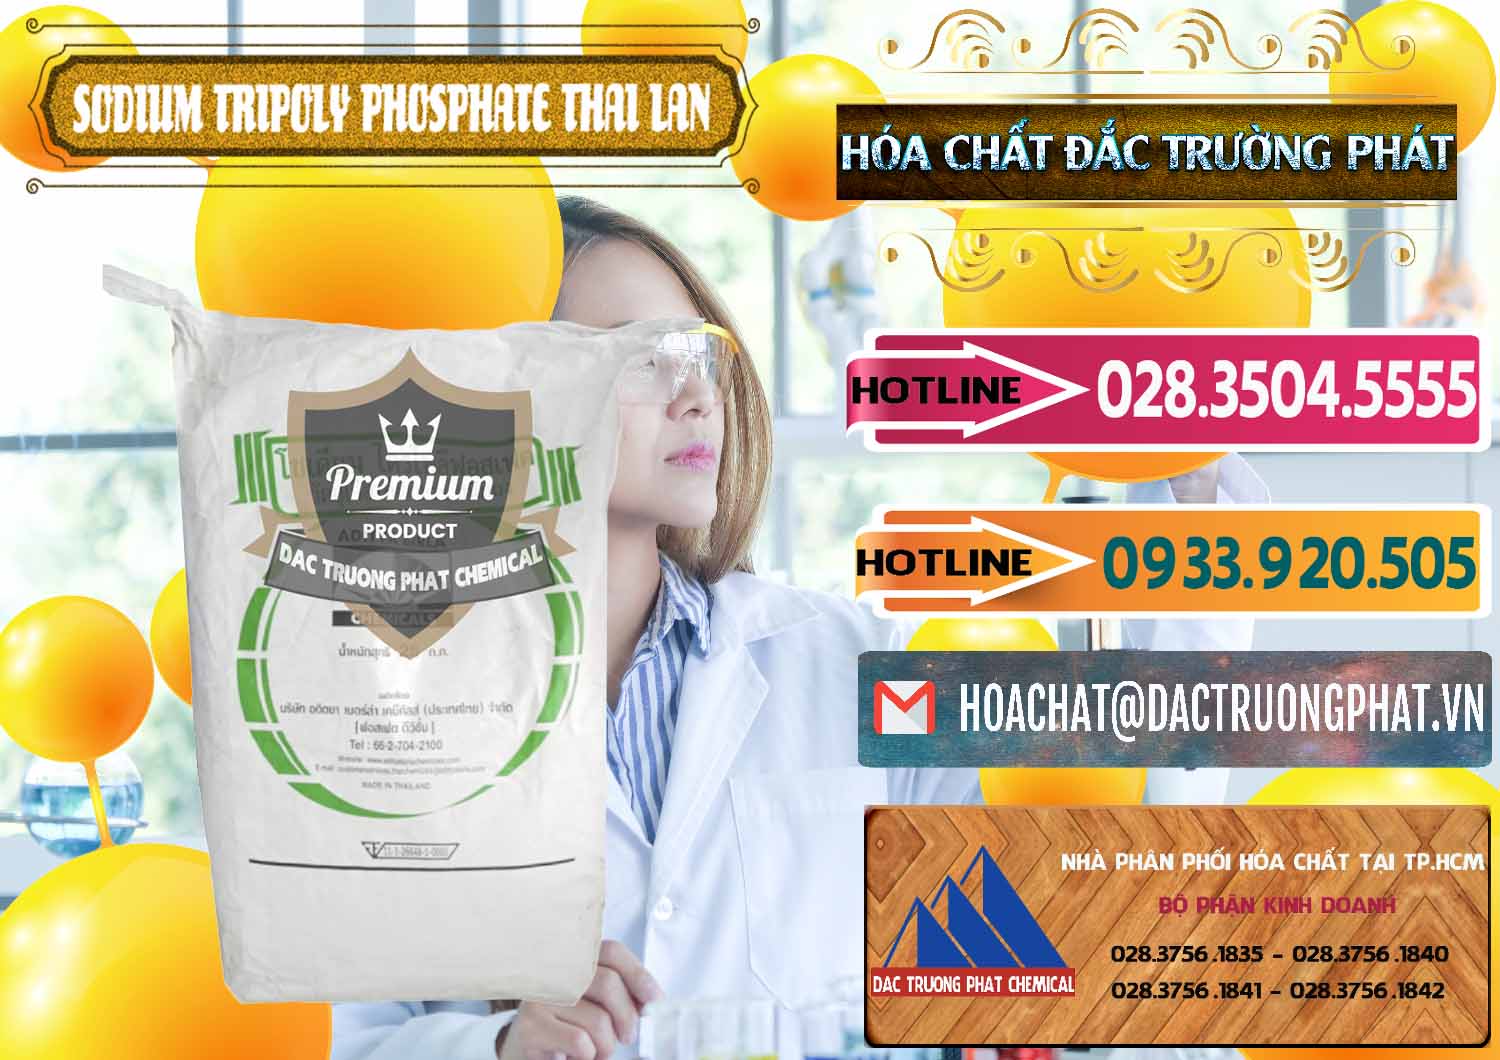 Cty kinh doanh _ bán Sodium Tripoly Phosphate - STPP Aditya Birla Grasim Thái Lan Thailand - 0421 - Bán & cung cấp hóa chất tại TP.HCM - dactruongphat.vn